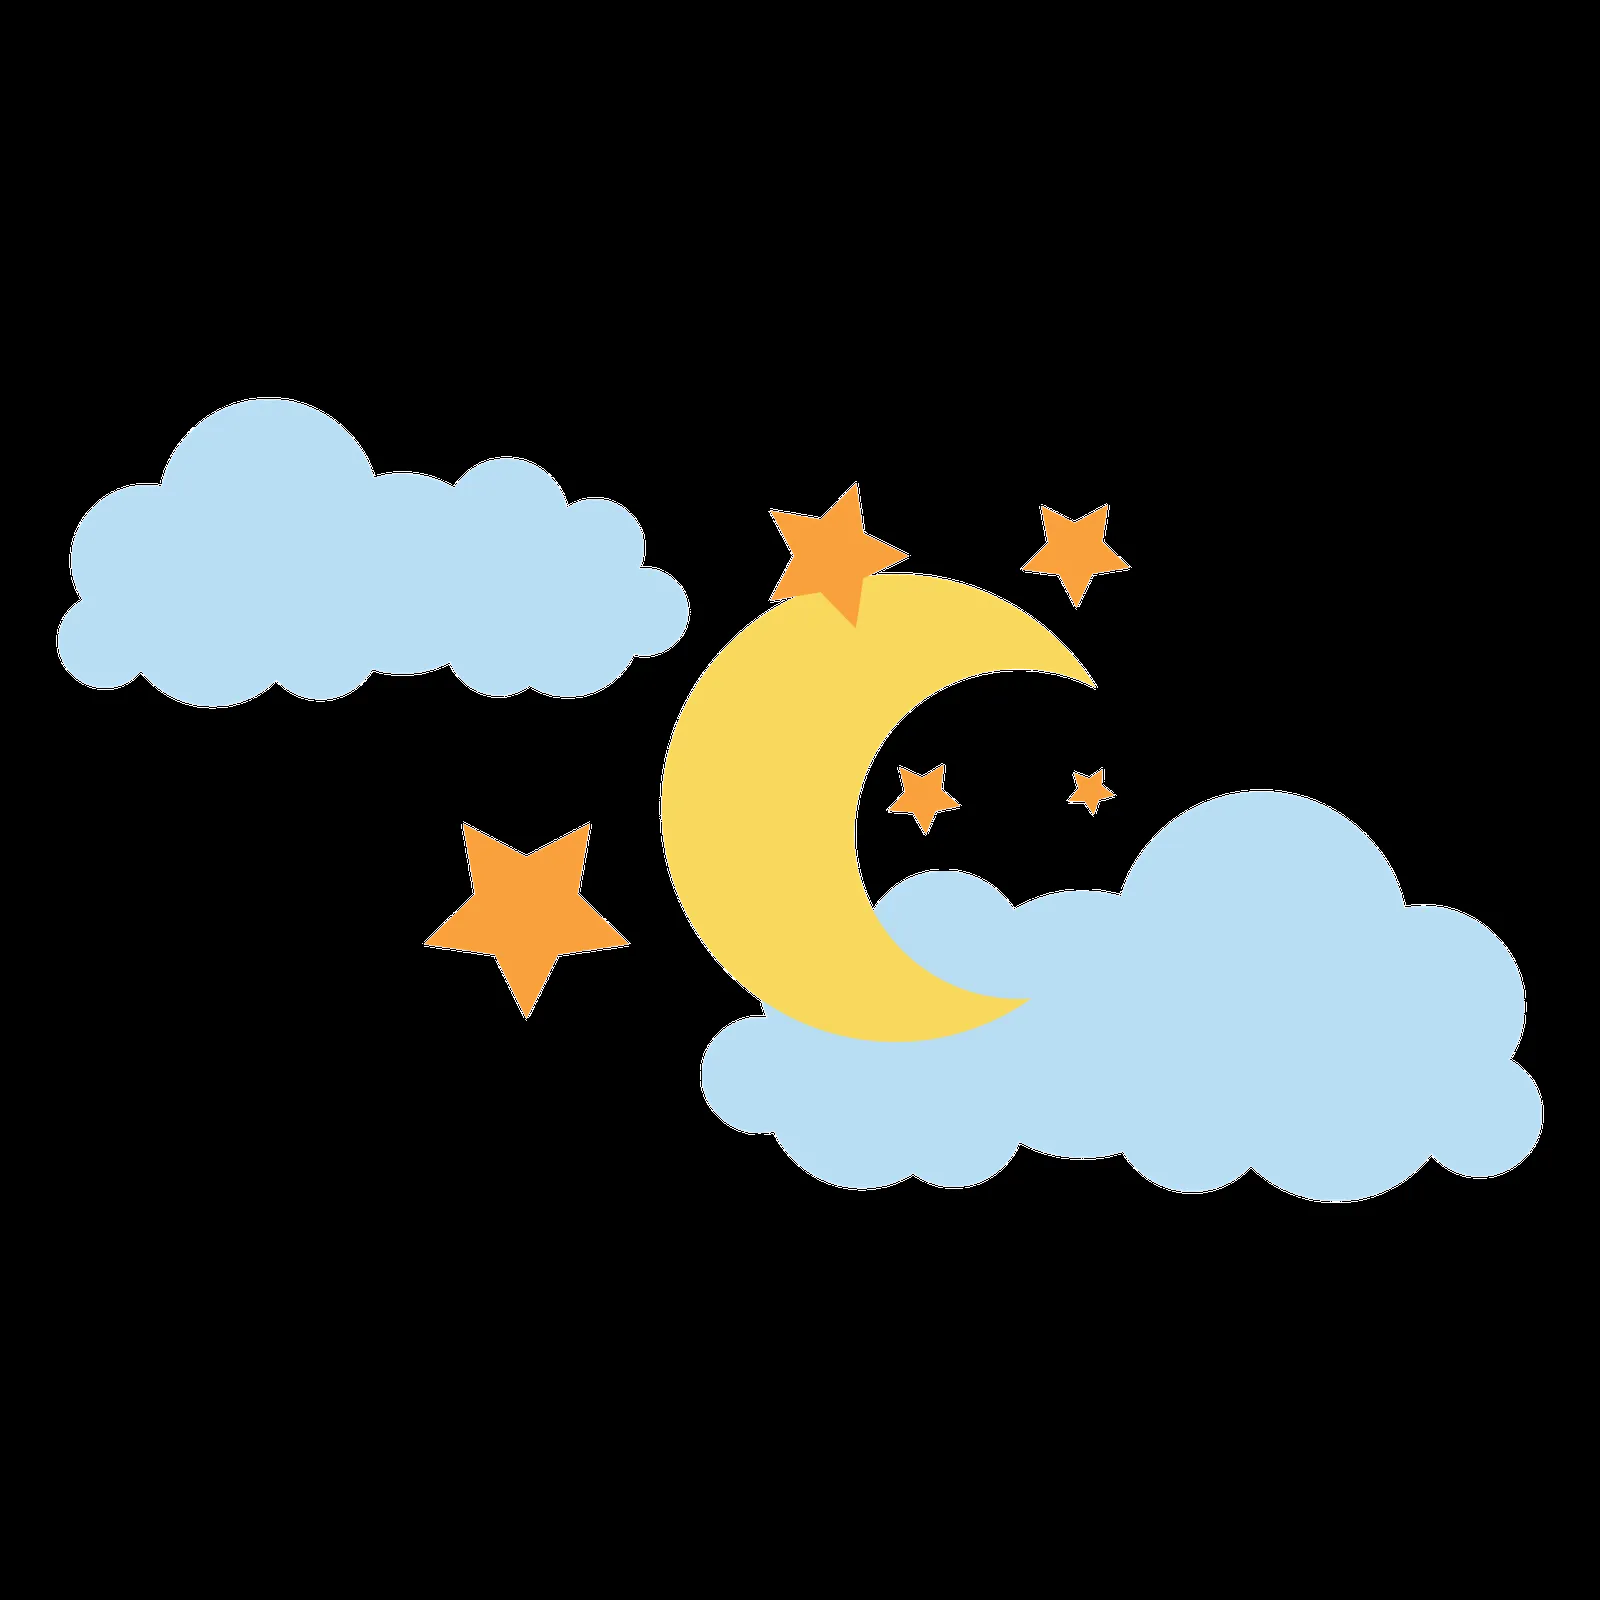 Luna y estrellas animadas - Imagui